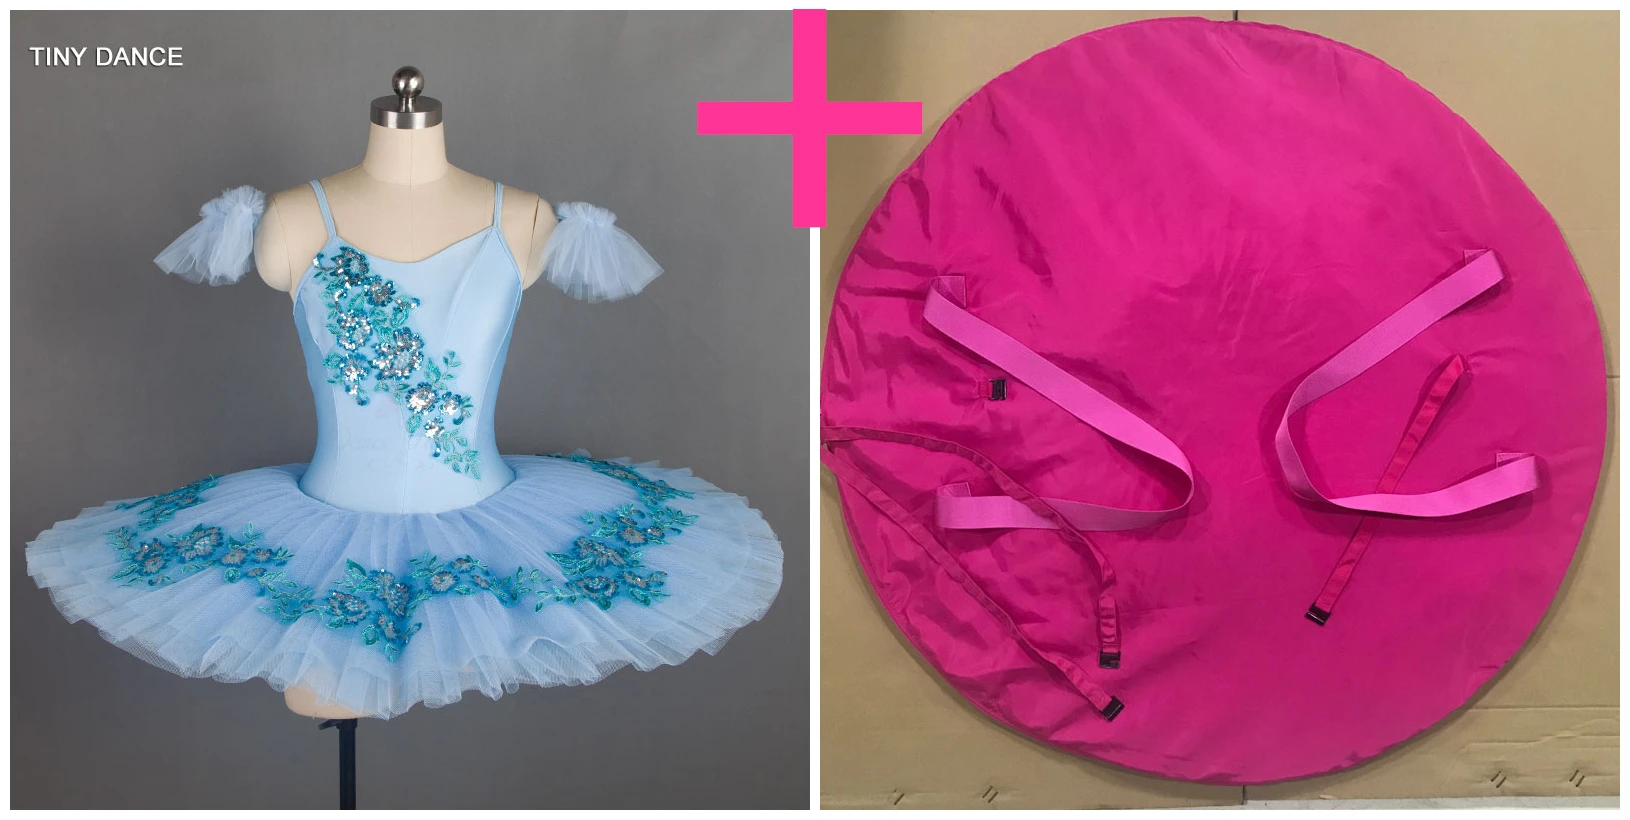 Бледно-голубой купальник для взрослых девочек классическая балетная пачка балерина костюм для танцев платье предварительно для профессиональных занятий балетом, танцами юбки-пачки BLL025 - Цвет: tutu and pink bag